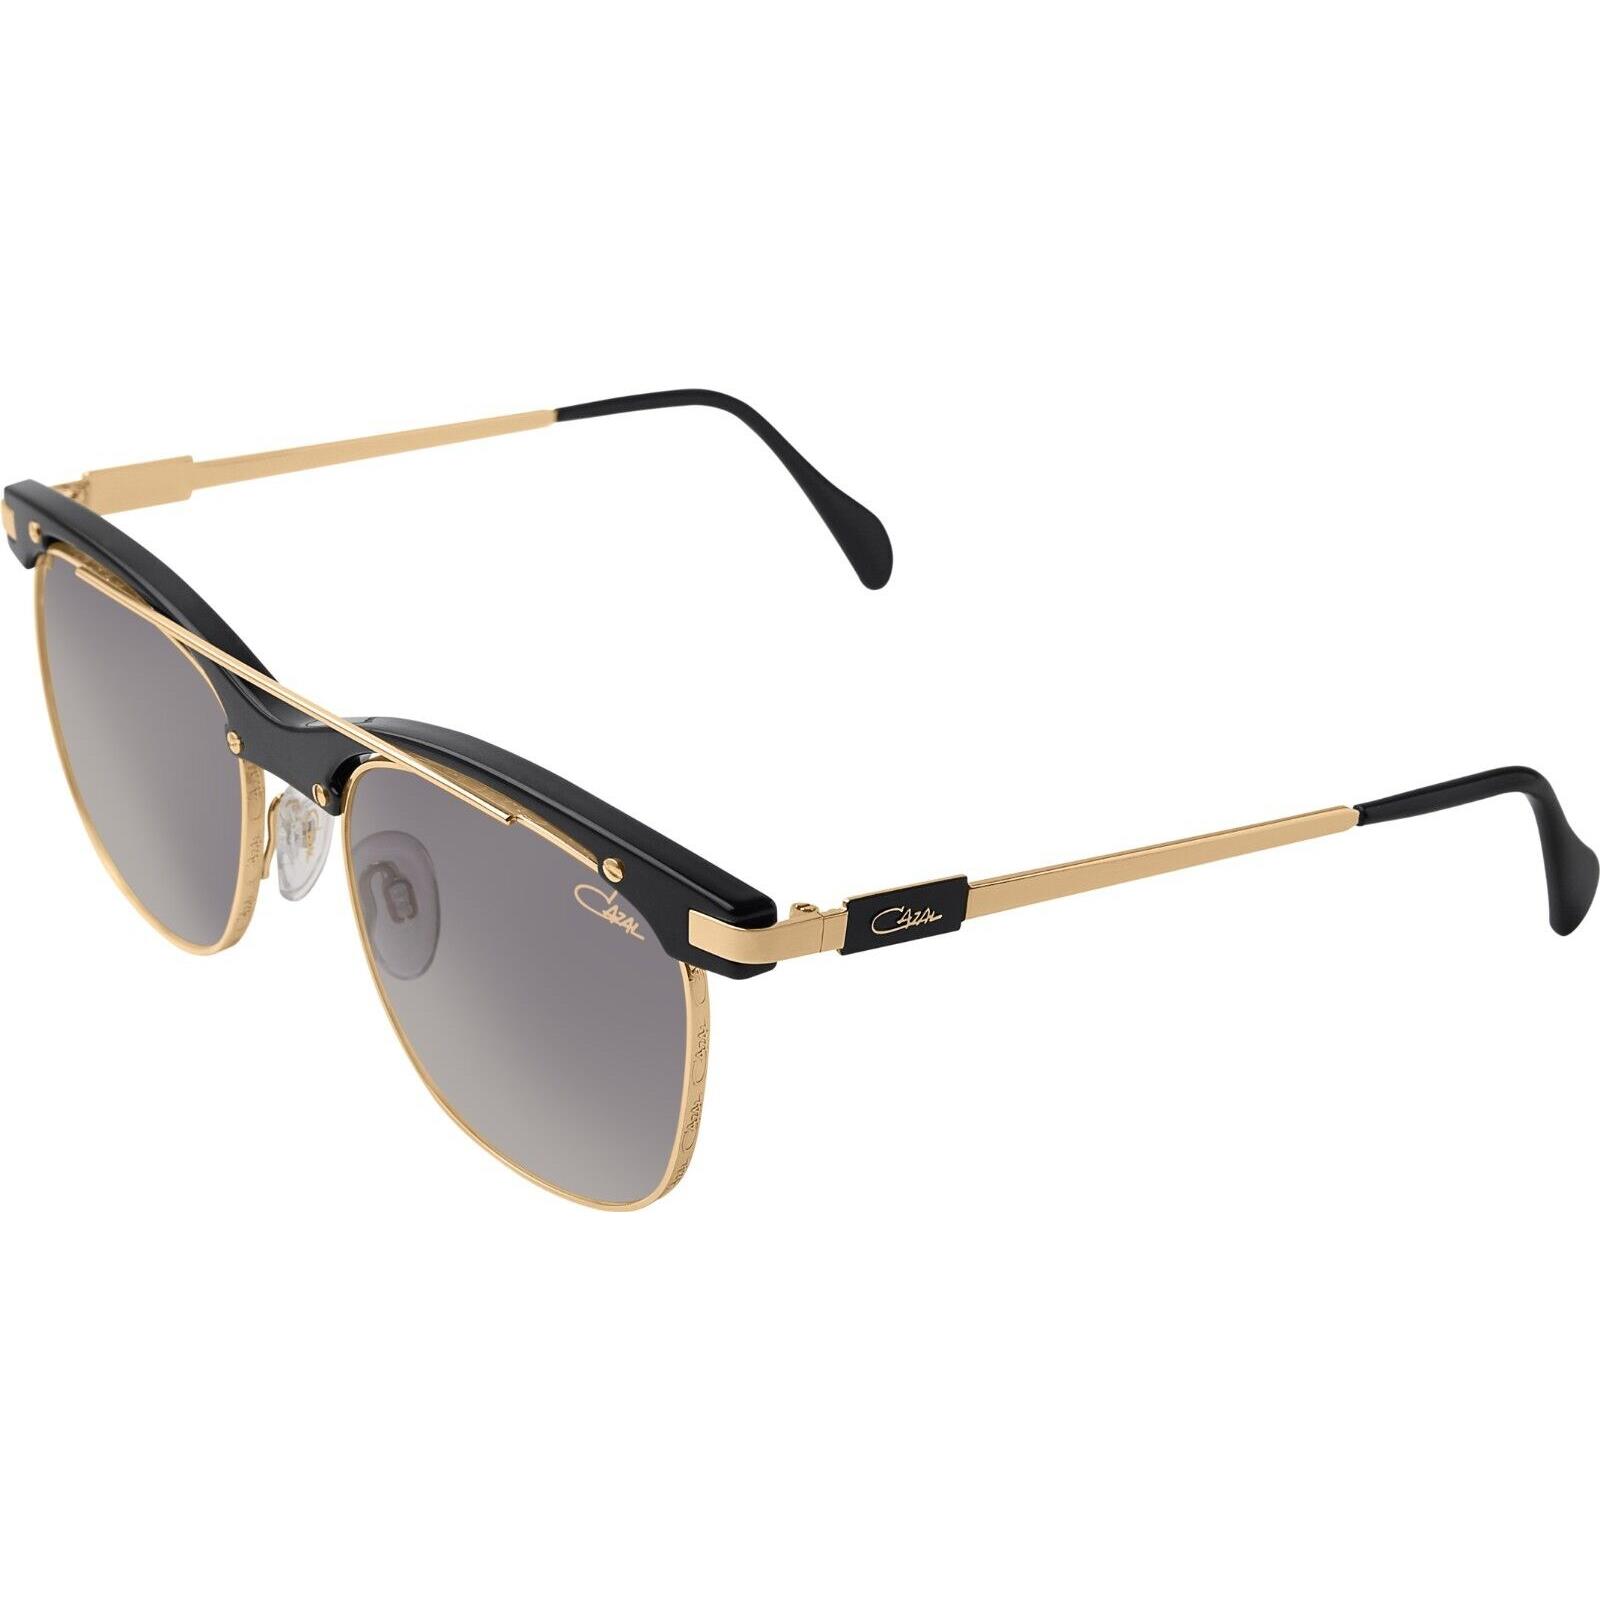 Cazal Square Sunglasses 9084-001 Black Gold Frame Gray Gradient Lenses UV